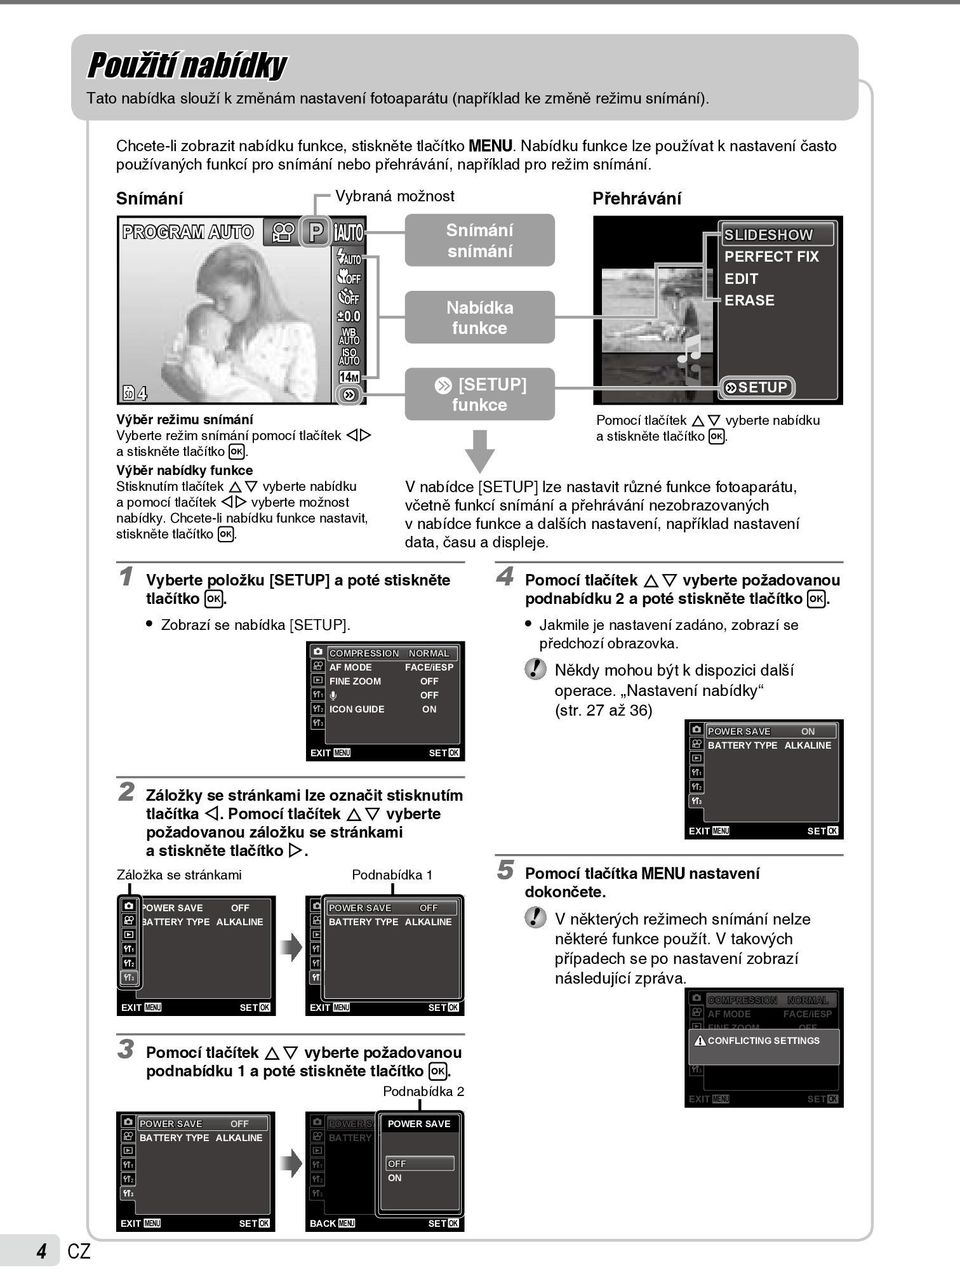 Snímání PROGRAM P ISO 1M Výběr režimu snímání Vyberte režim snímání pomocí tlačítek HI a stiskněte tlačítko H.